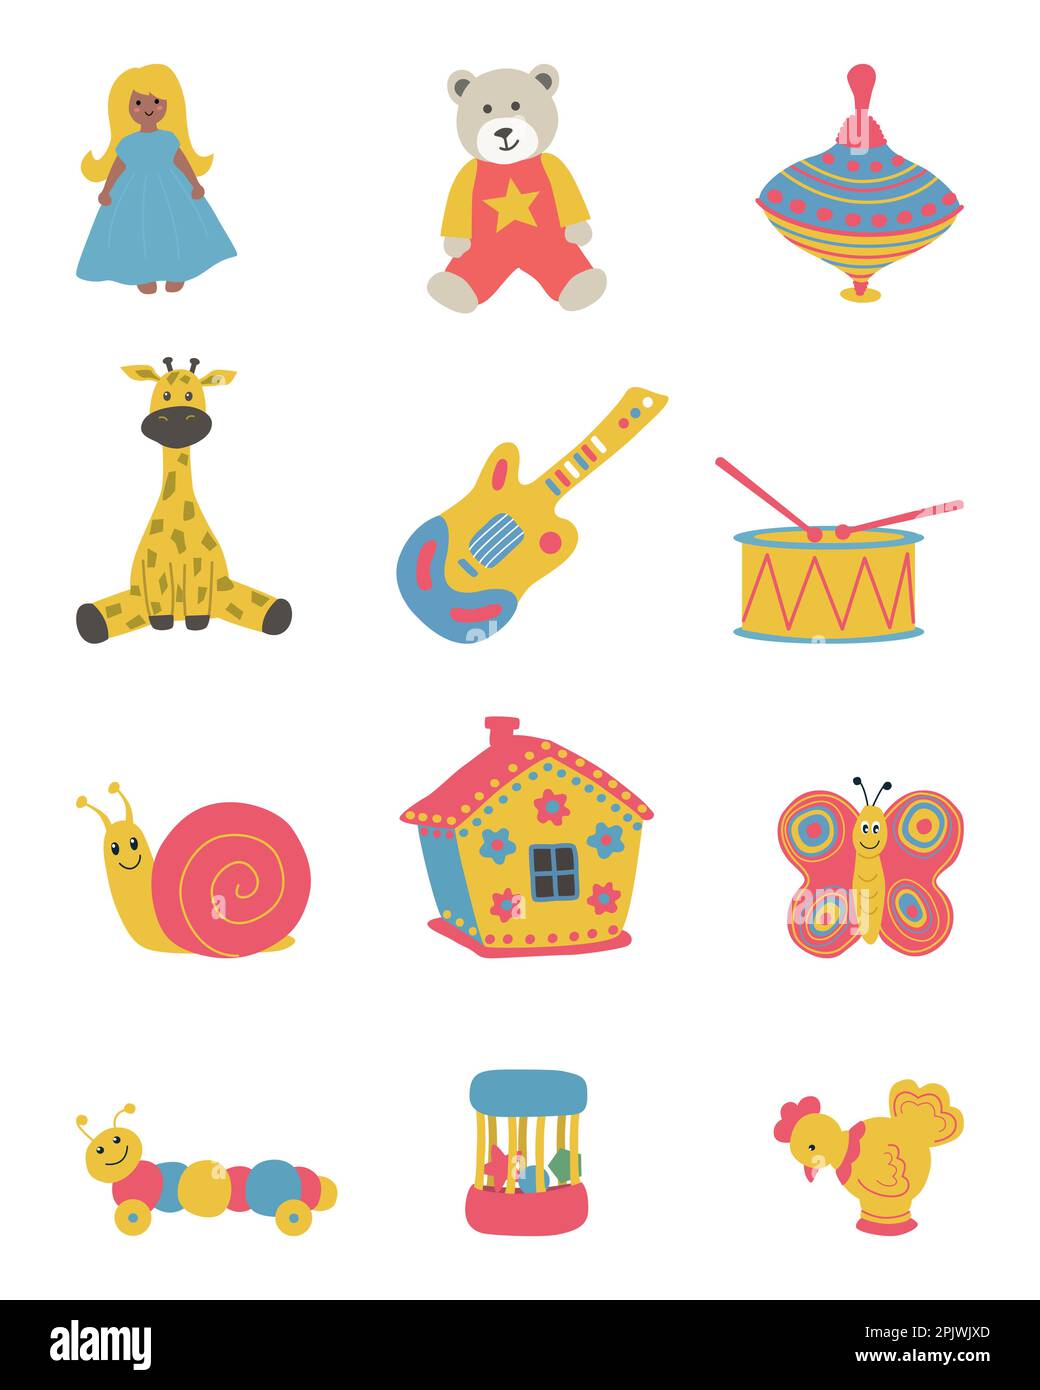 Jouets isolés sur fond blanc. Il y a une poupée, un ours en peluche, une maison, un sommet de broche, une giraf, une guitare, un tambour et d'autres choses dans l'image. Illustration de Vecteur